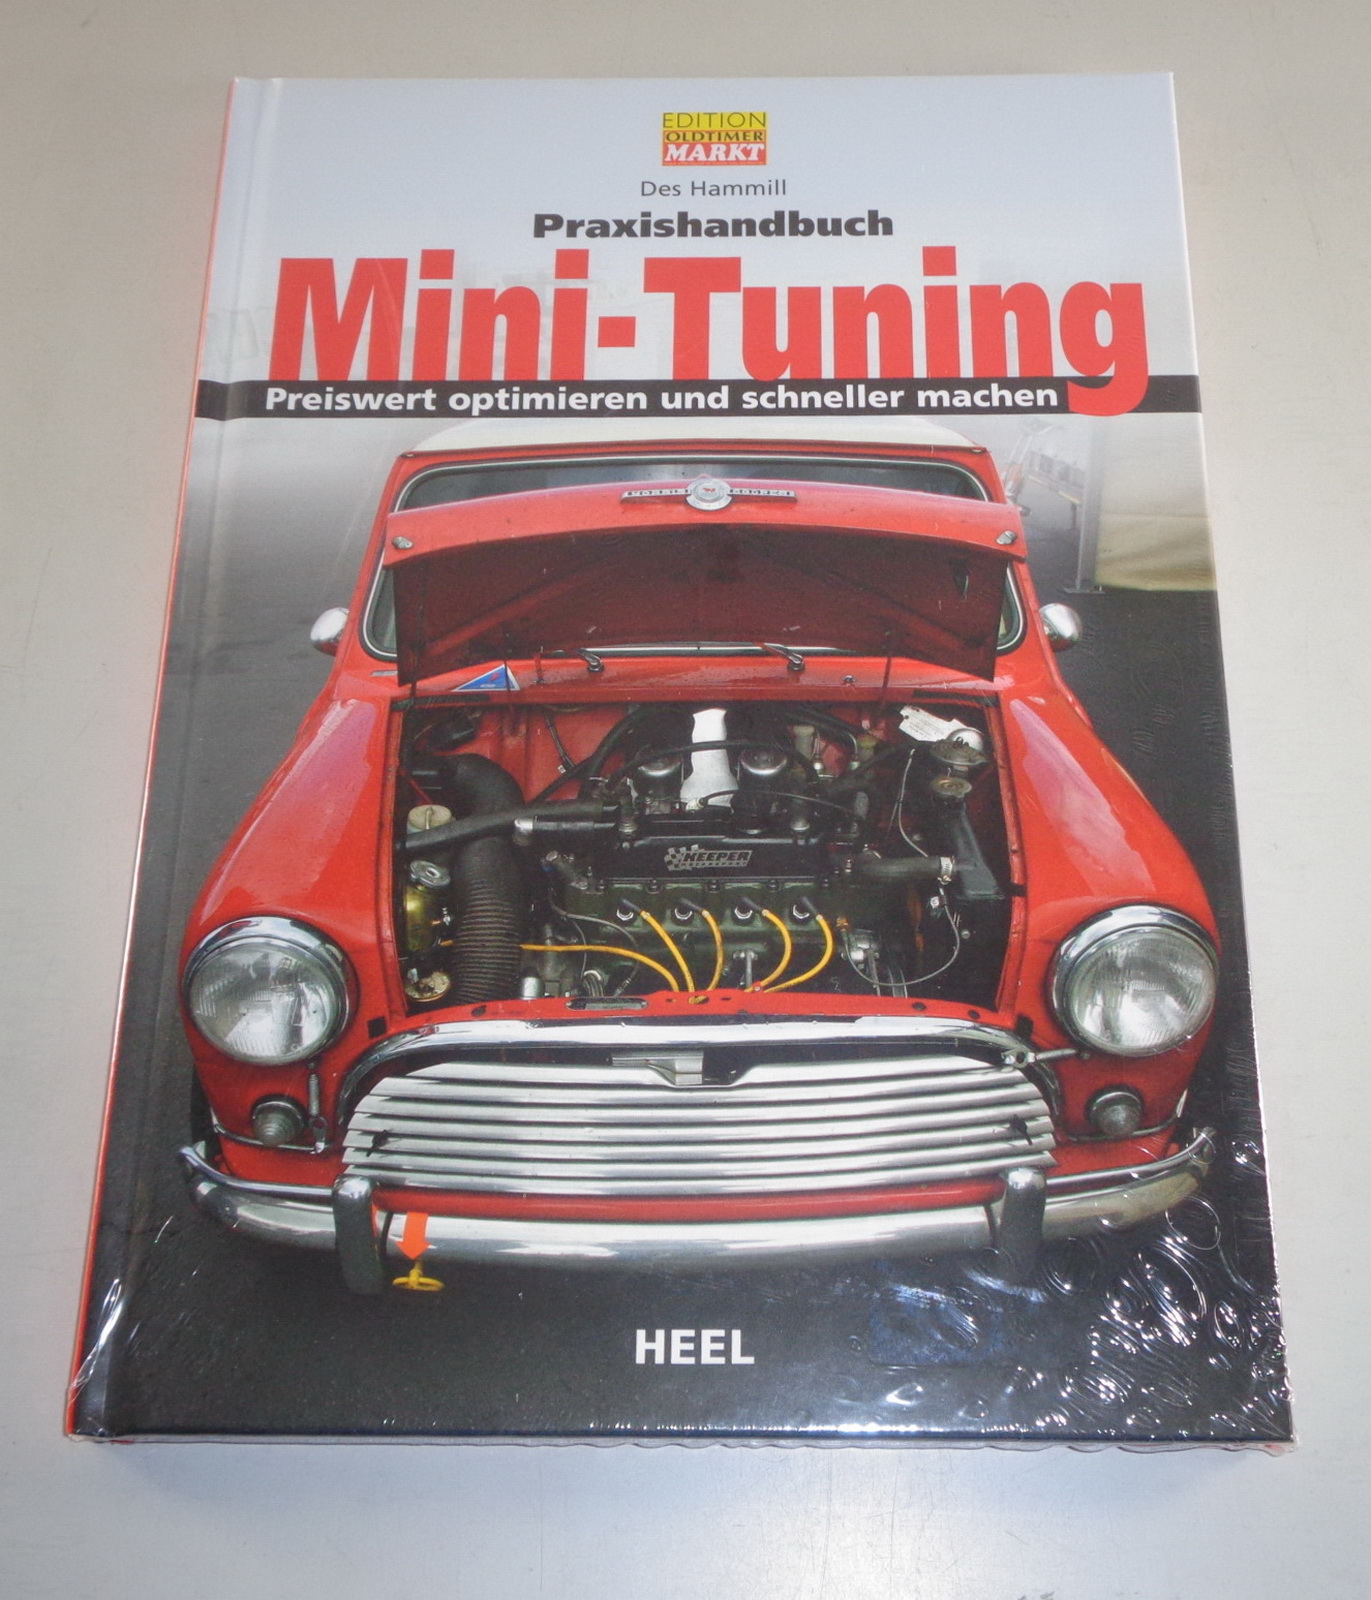 Praxishandbuch Mini Tuning preiswert optimieren schneller machen Ratgeber Buch 